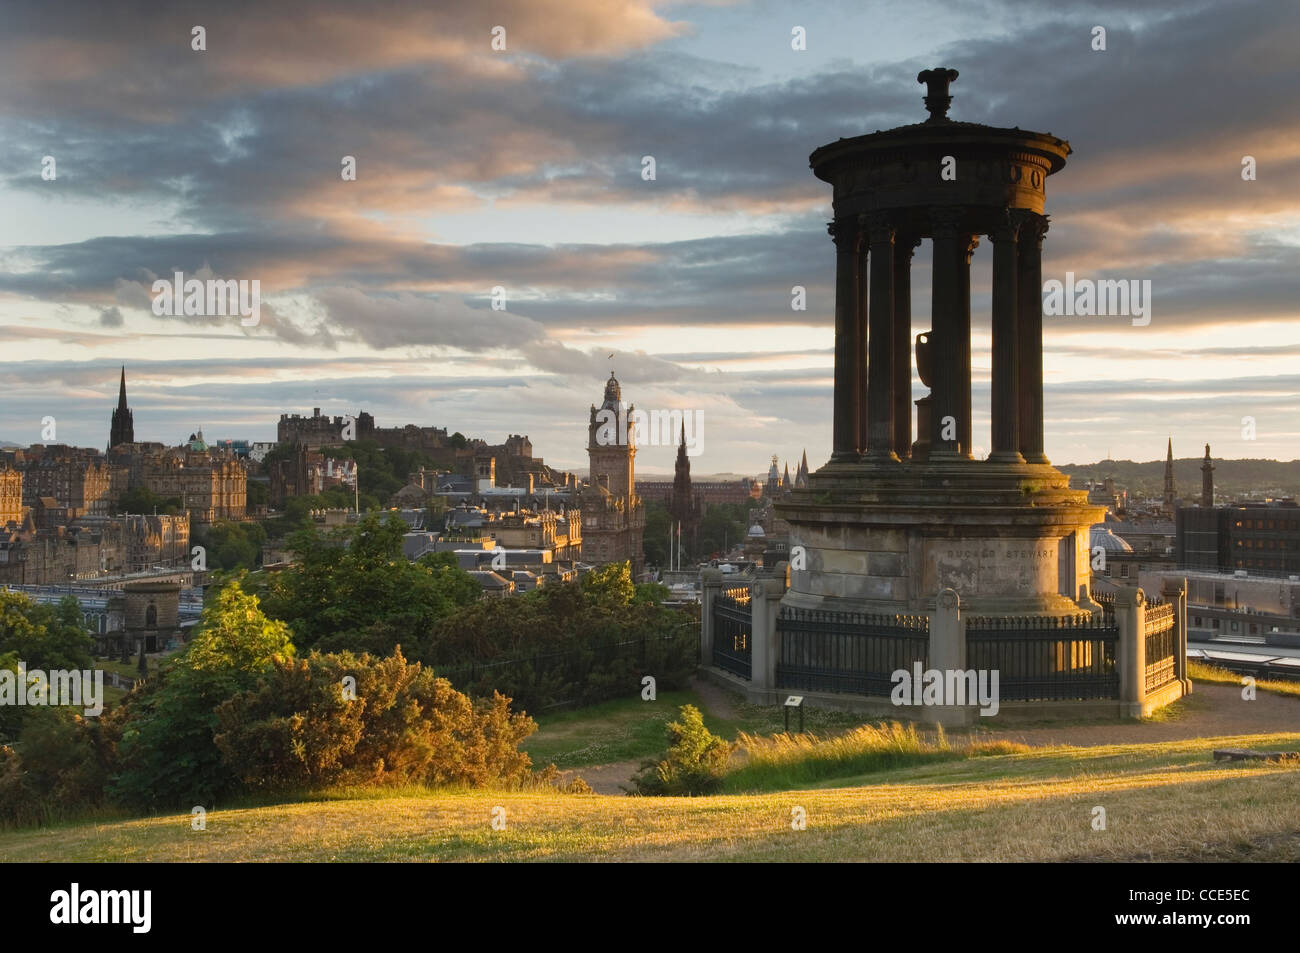 Al atardecer, el horizonte de Edimburgo en Escocia. Foto de stock